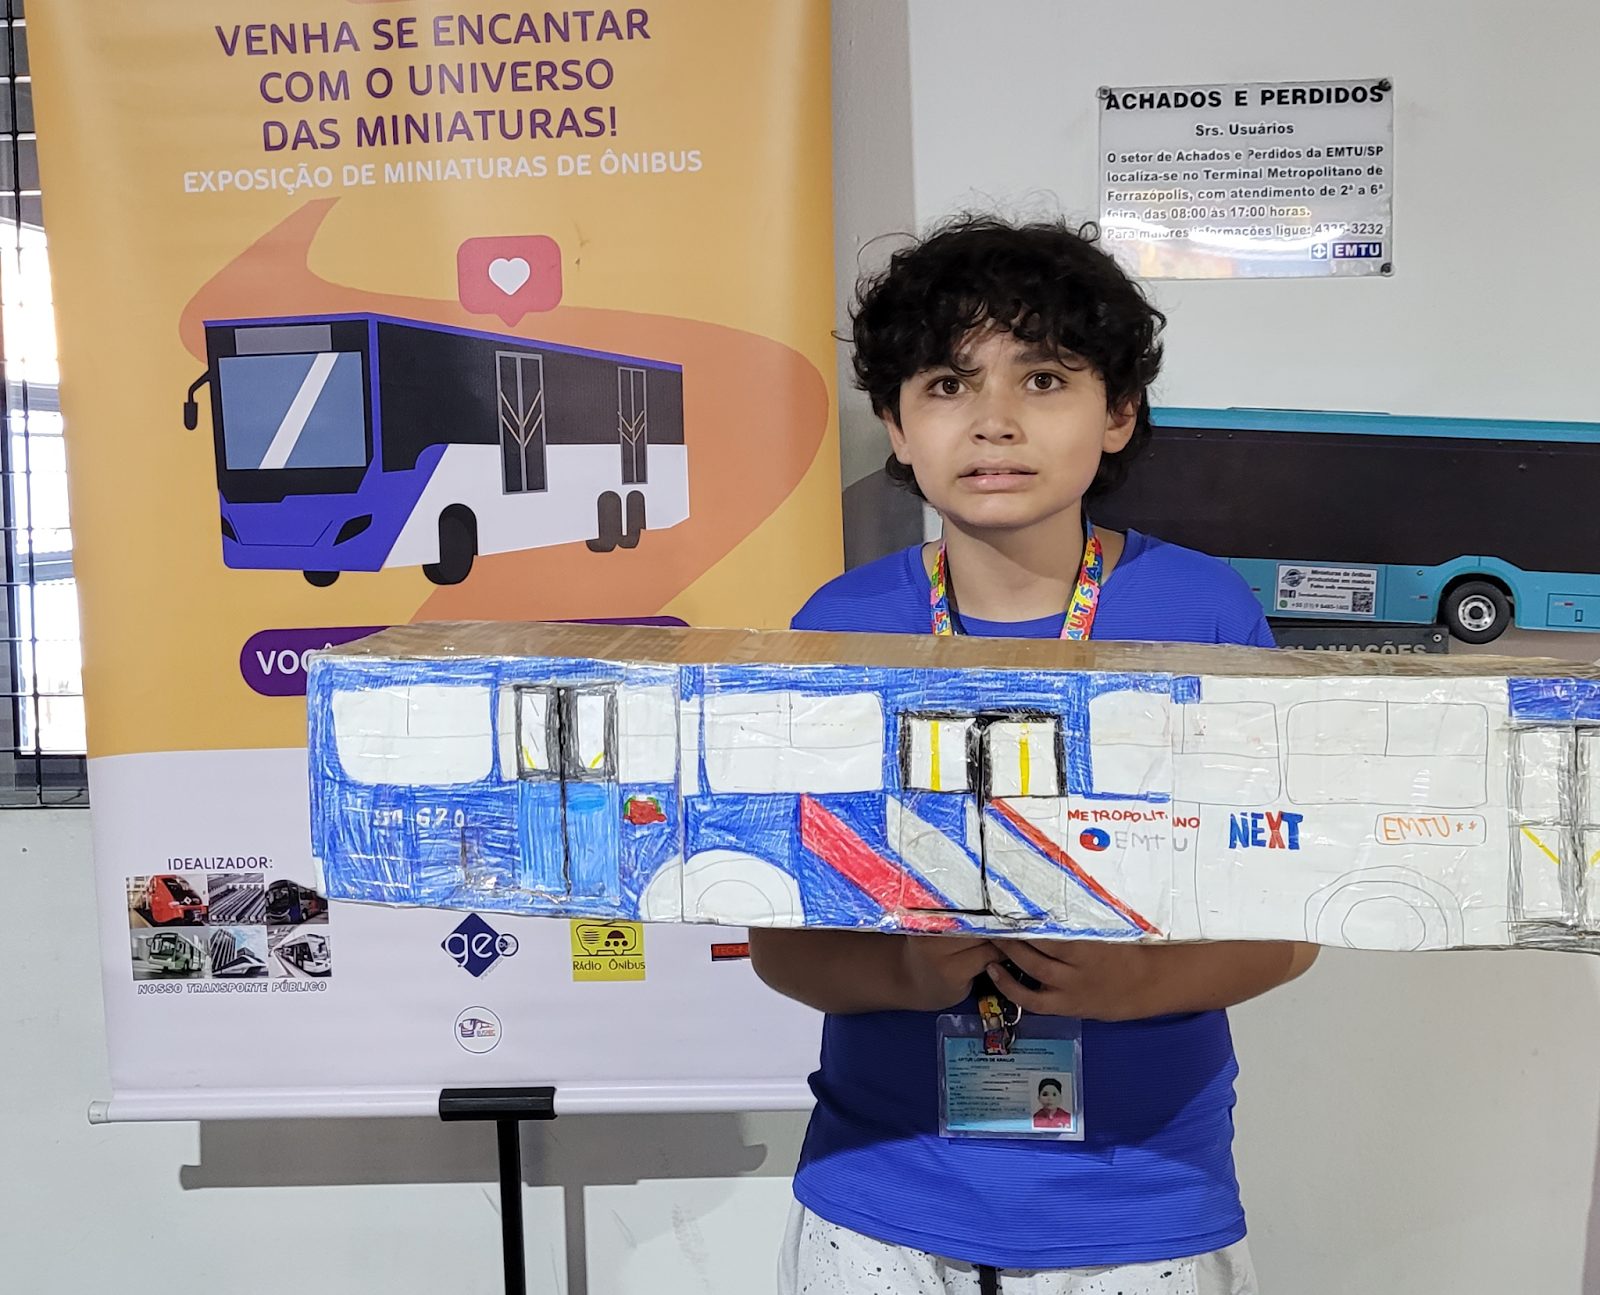 minibusólogo com autismo Inspira com Miniaturas de Ônibus em São Paulo